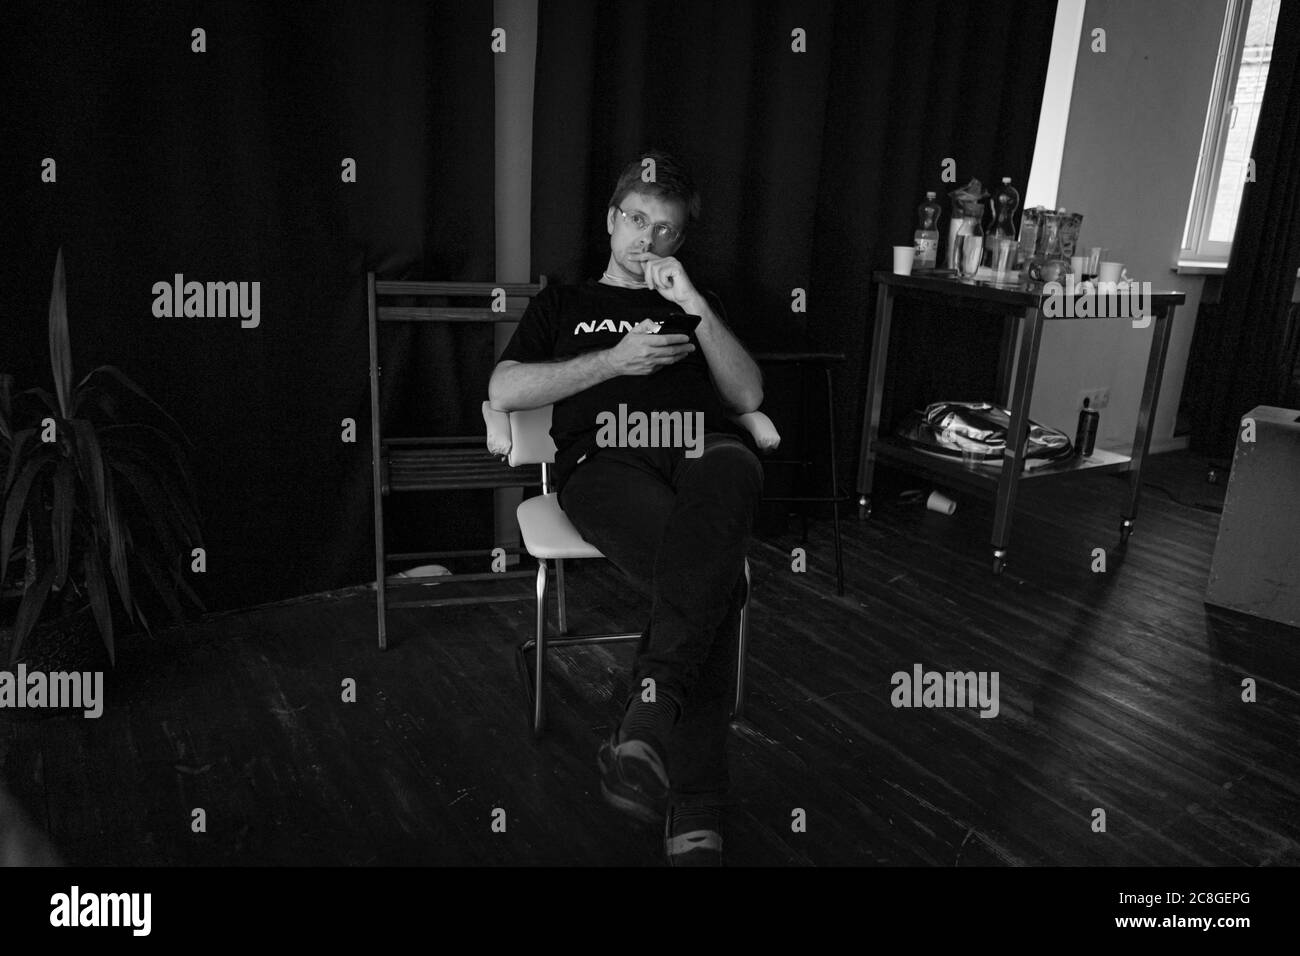 L'homme pensif utilise le téléphone assis en studio sur fond noir. Présentation de l'éclairage LED de Nanlite Studio. Coulisses de la présentation. Juin 2020, Kiev Banque D'Images